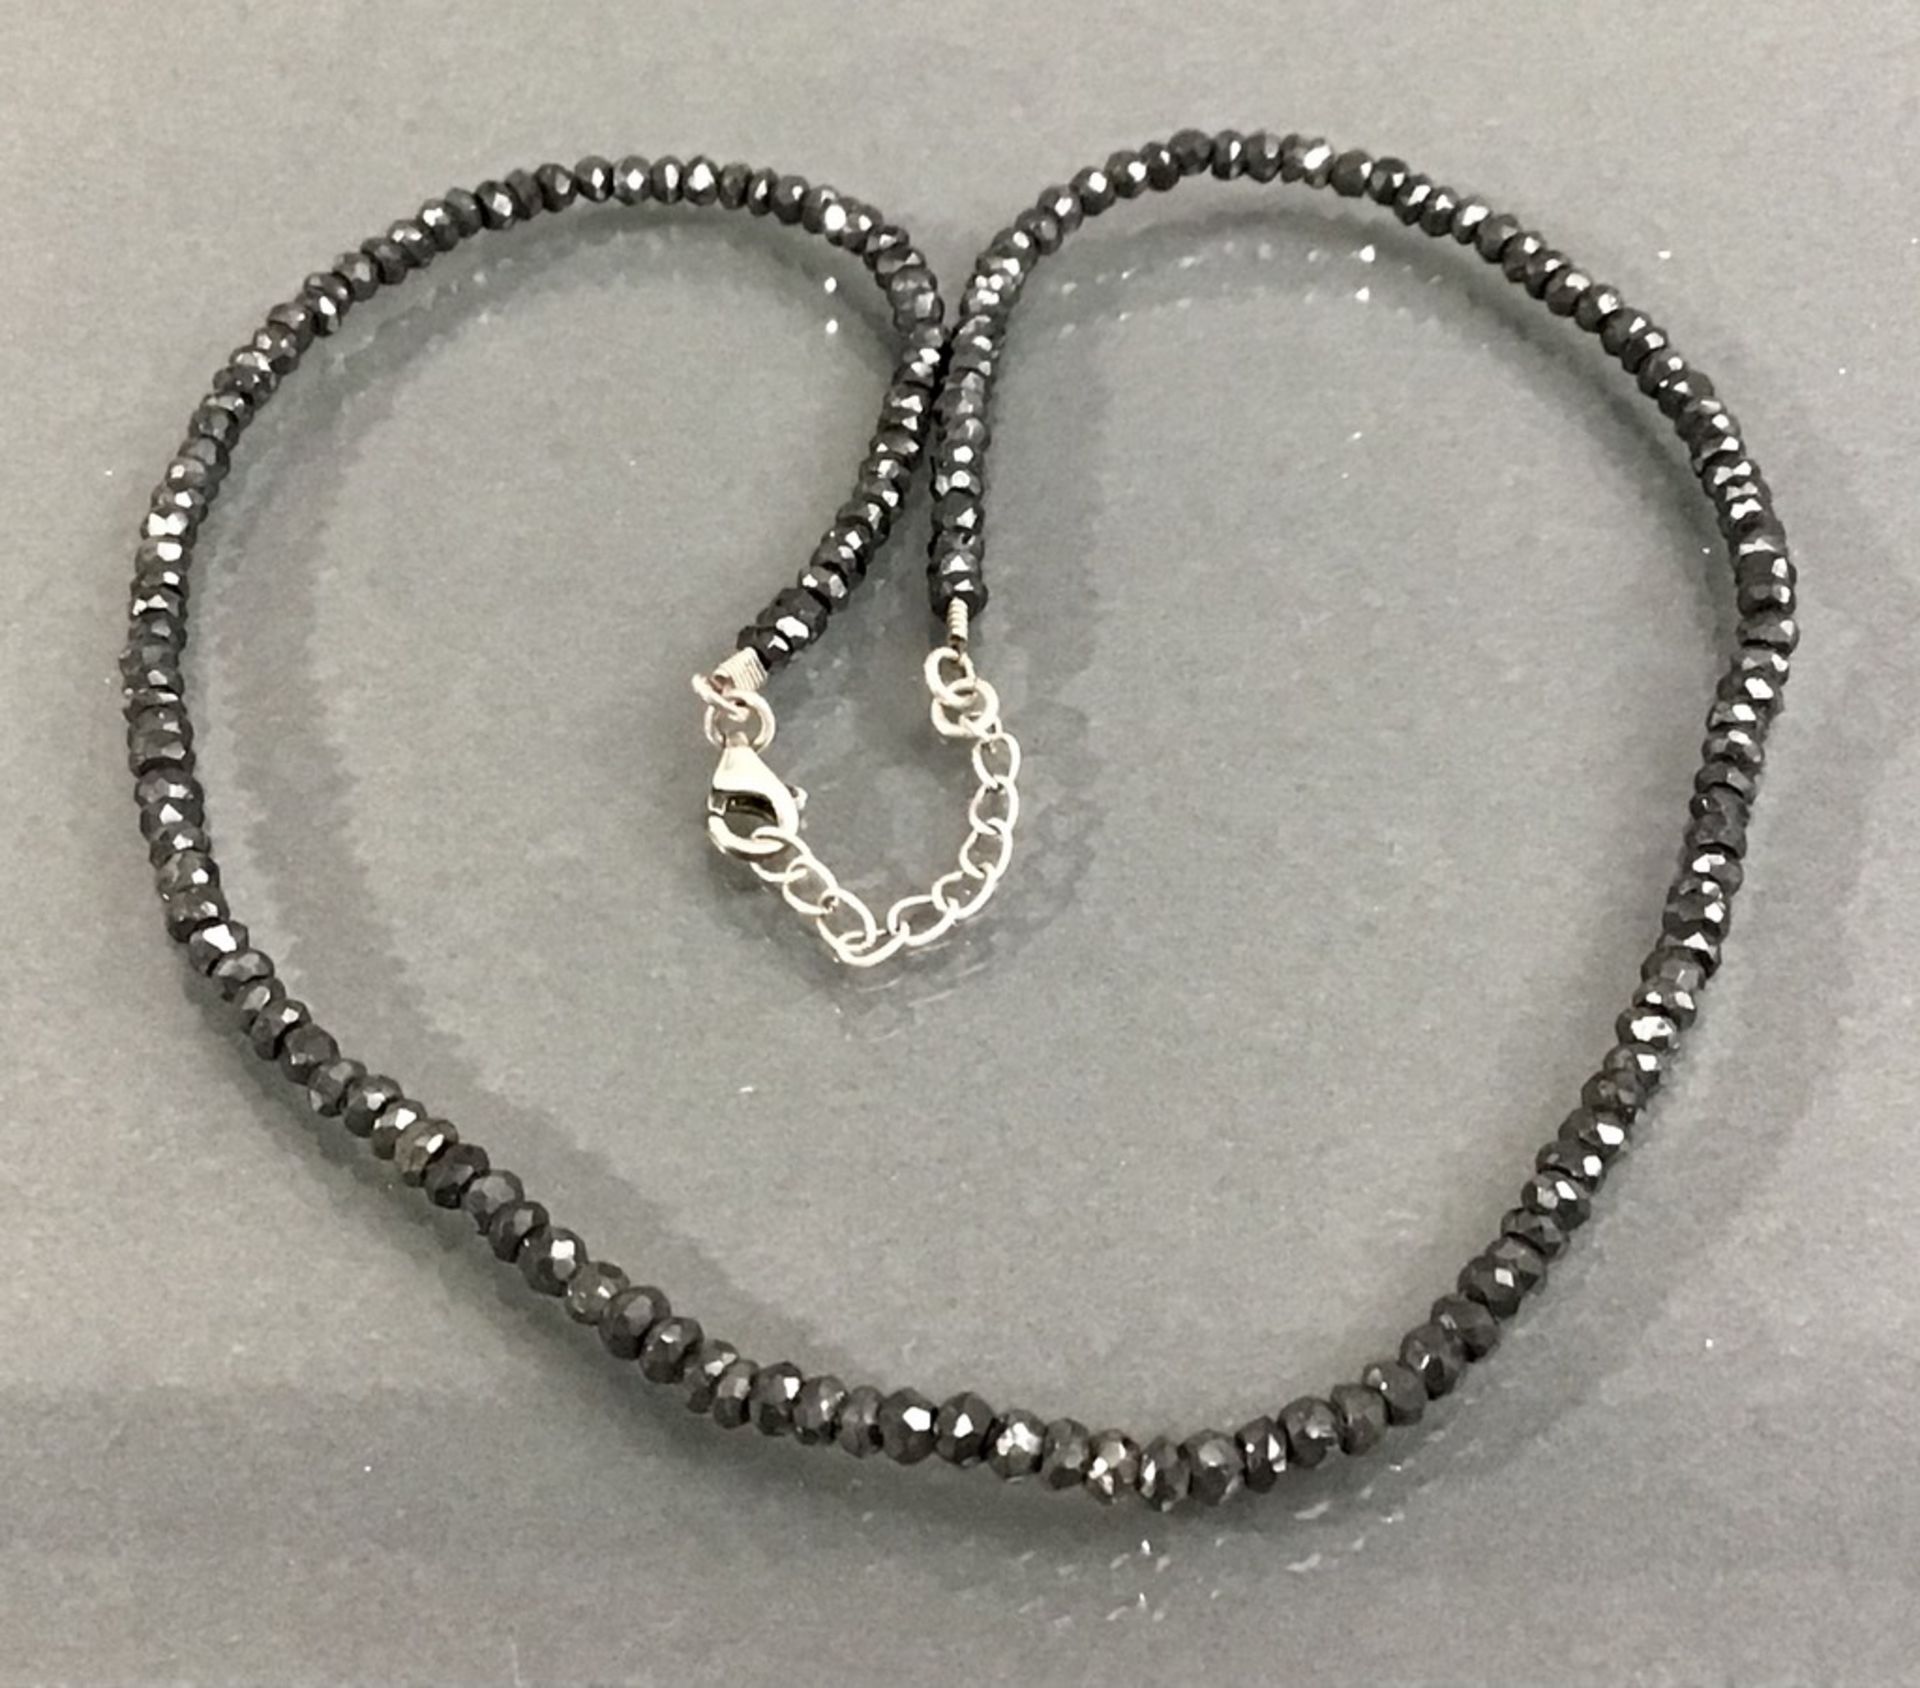 Rohdiamantkette, anthrazitfarbene Steine, L 40cm, Verschluß Silber geprüft